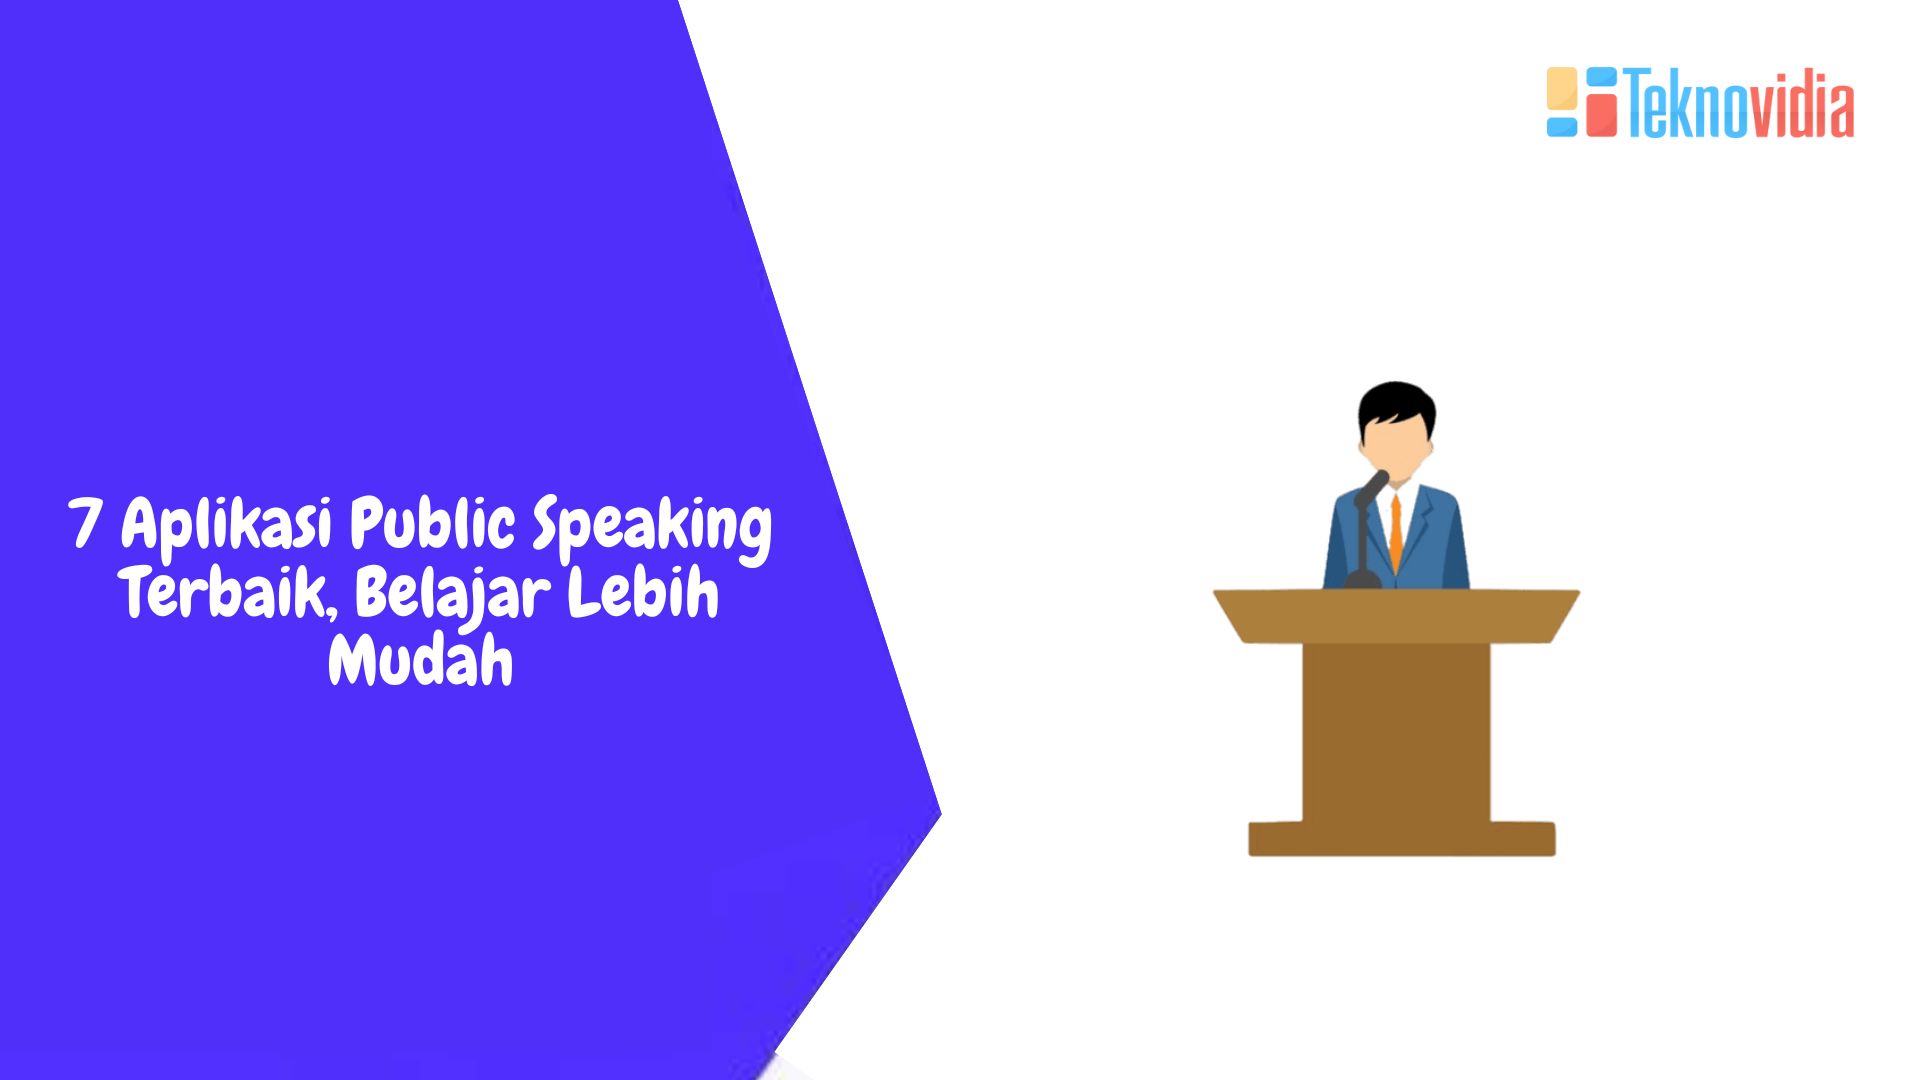 7 Aplikasi Public Speaking Terbaik, Belajar Lebih Mudah